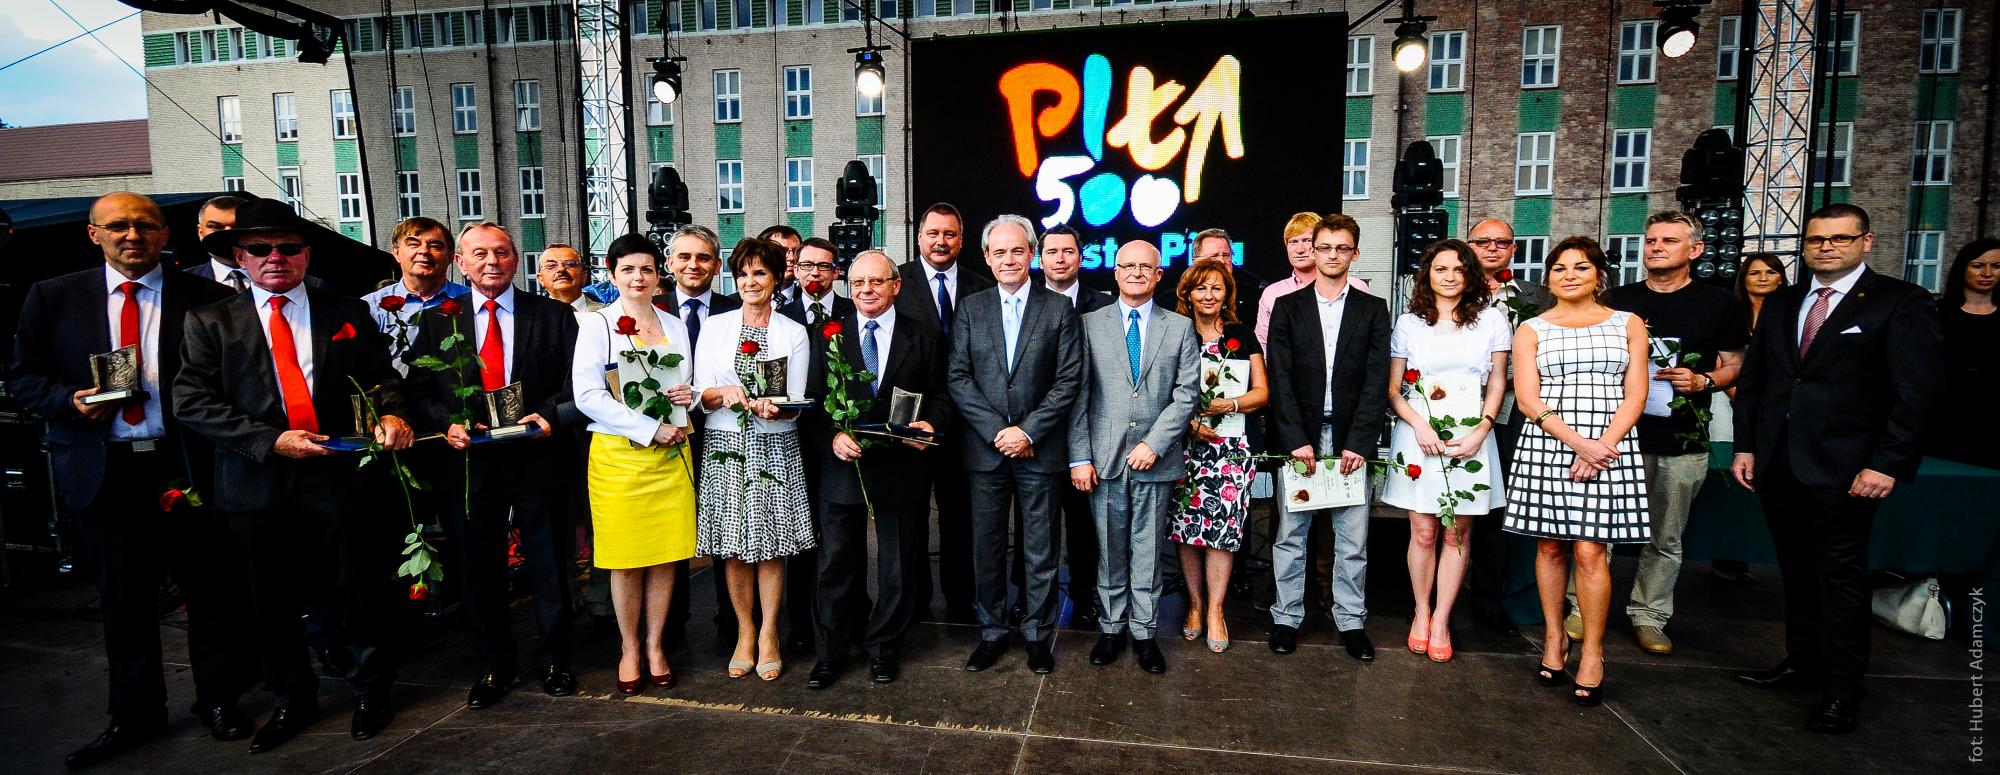 Konkurs im. Stanisława Staszica - Piła czerwiec 2013. Fot. H. Adamczyk